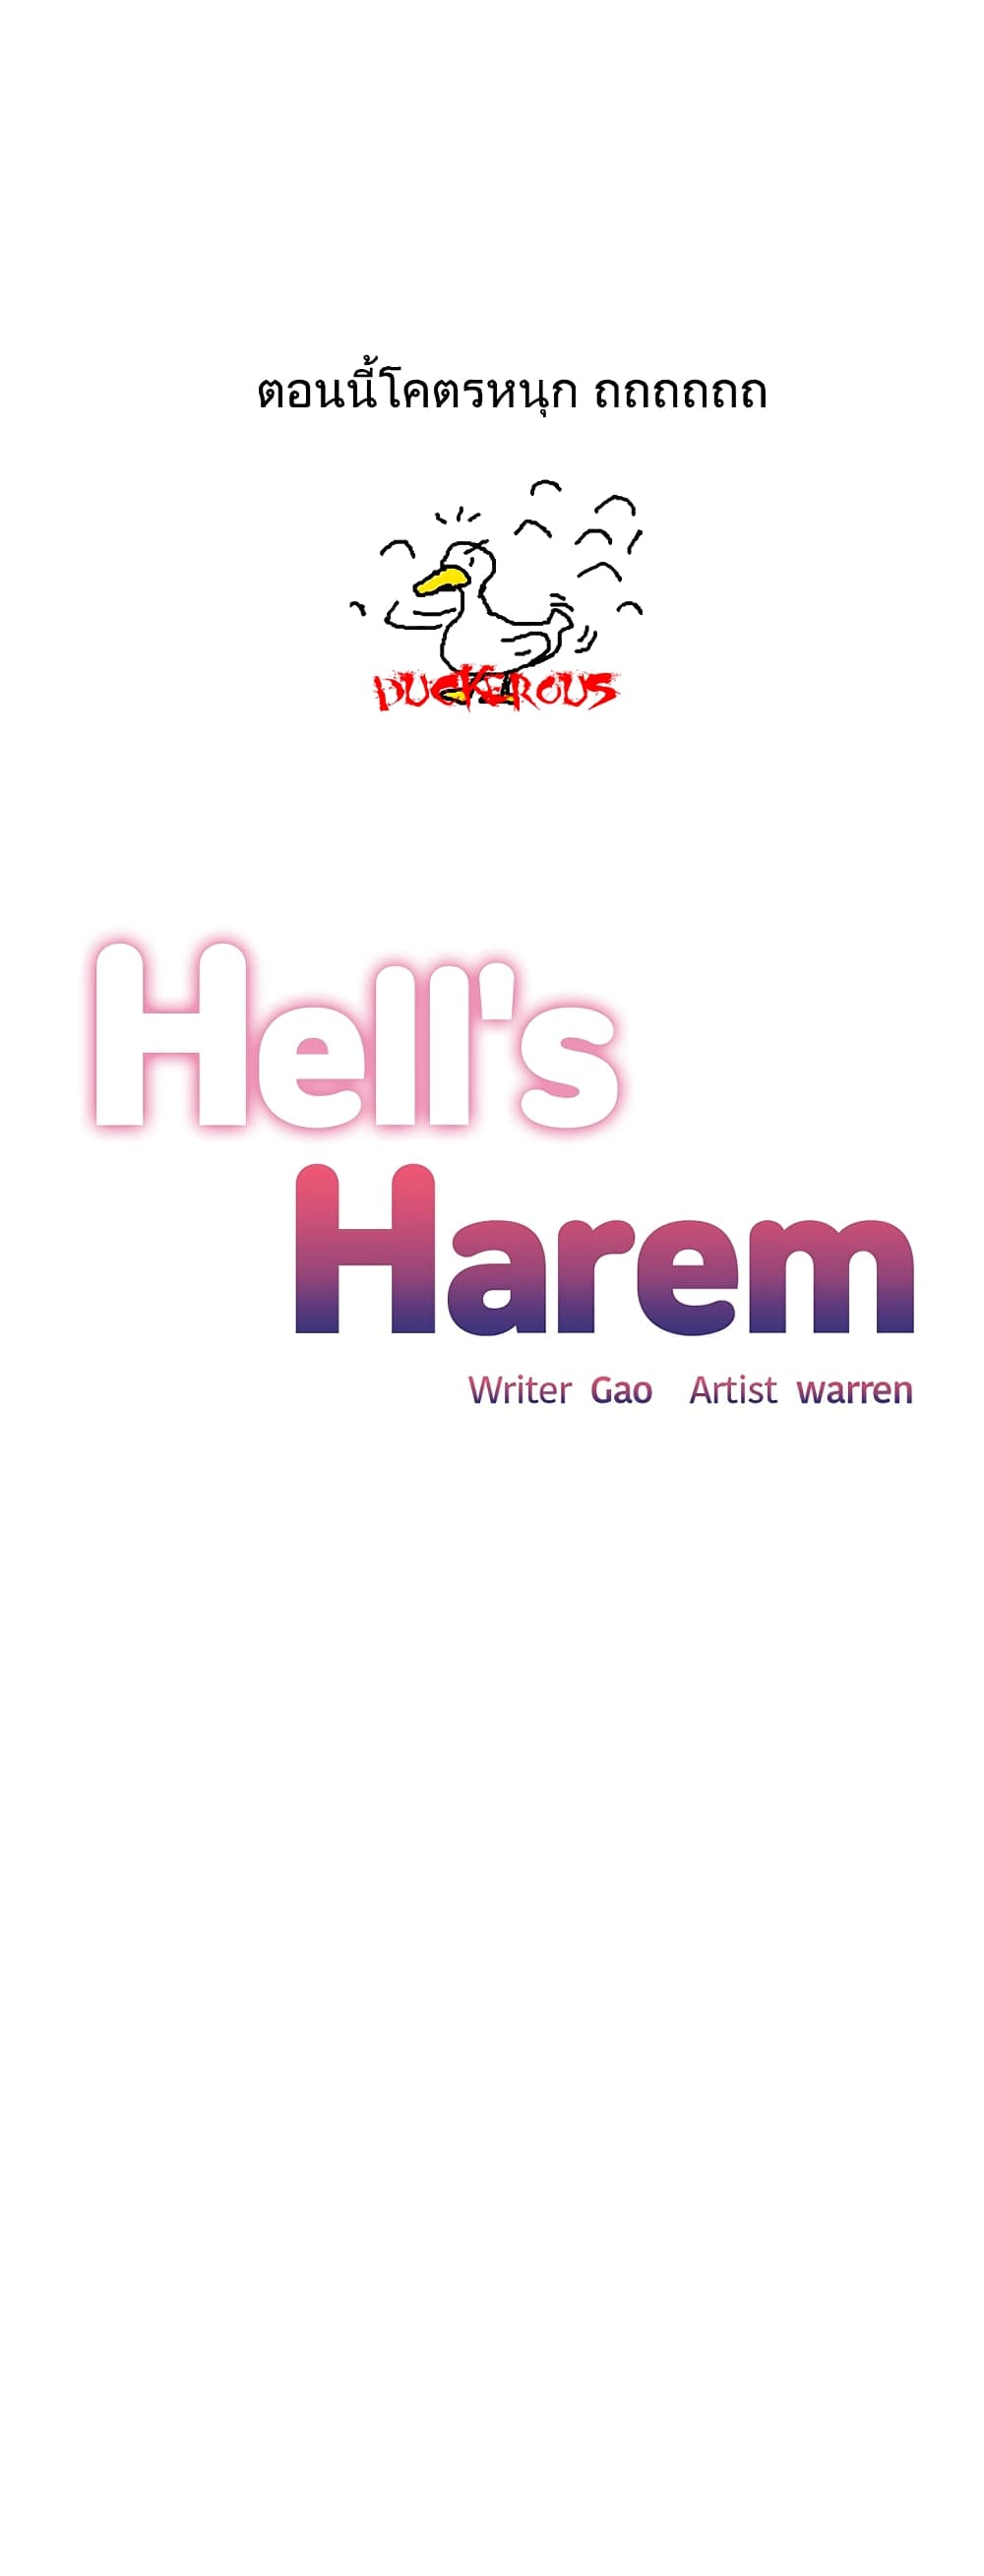 Hell's Harem 38 (1)